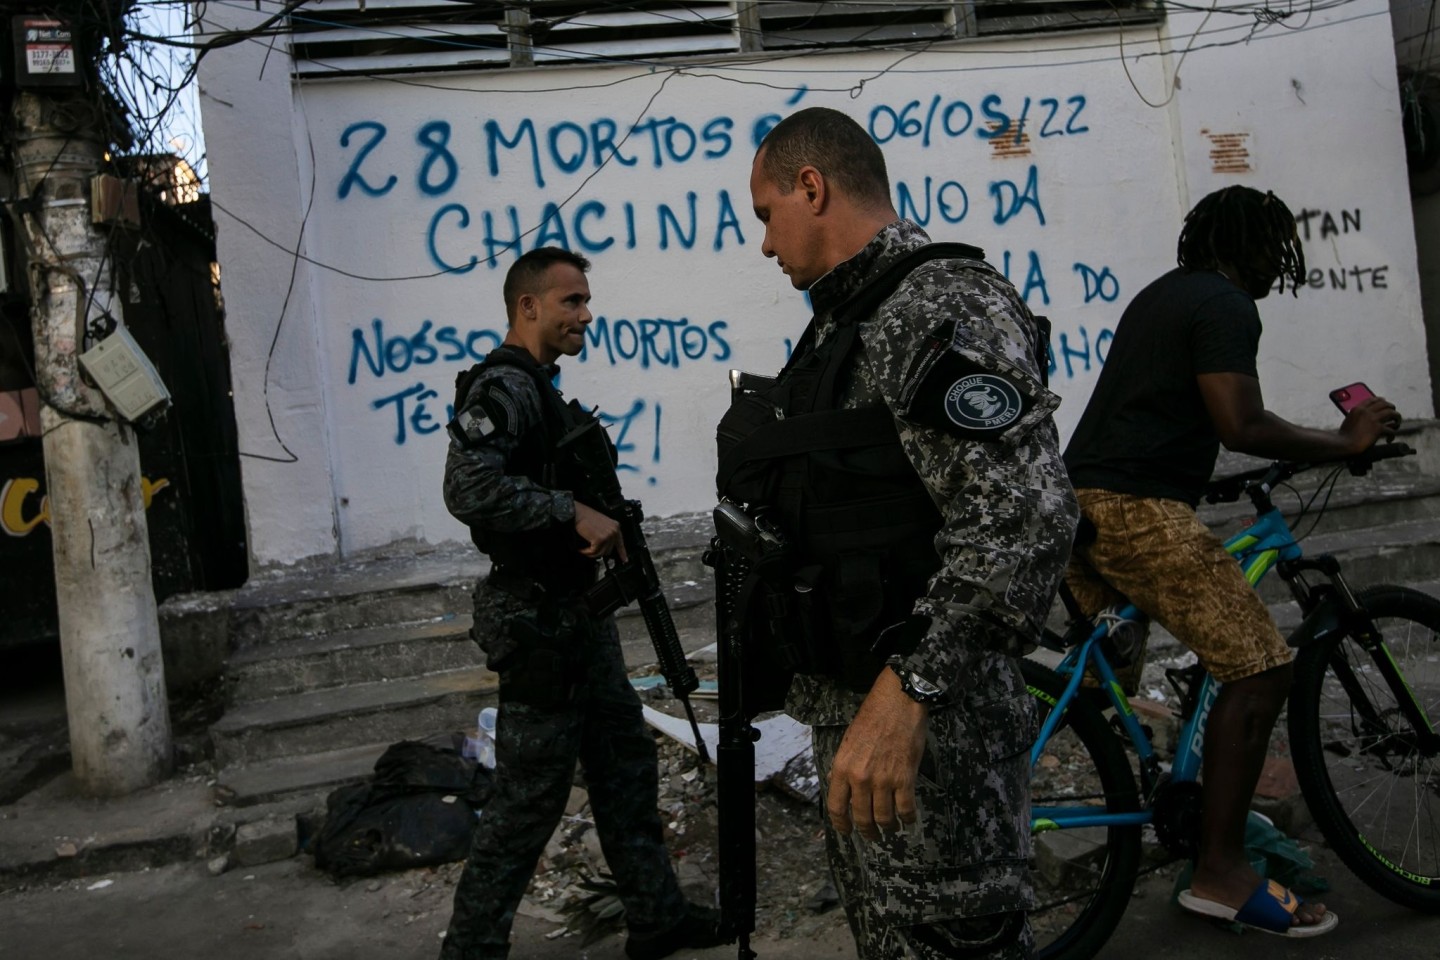 Bereitschaftspolizisten patrouillieren in Rio De Janeiro. Auf der Mauer hinter ihnen steht in portugiesischer Sprache: 